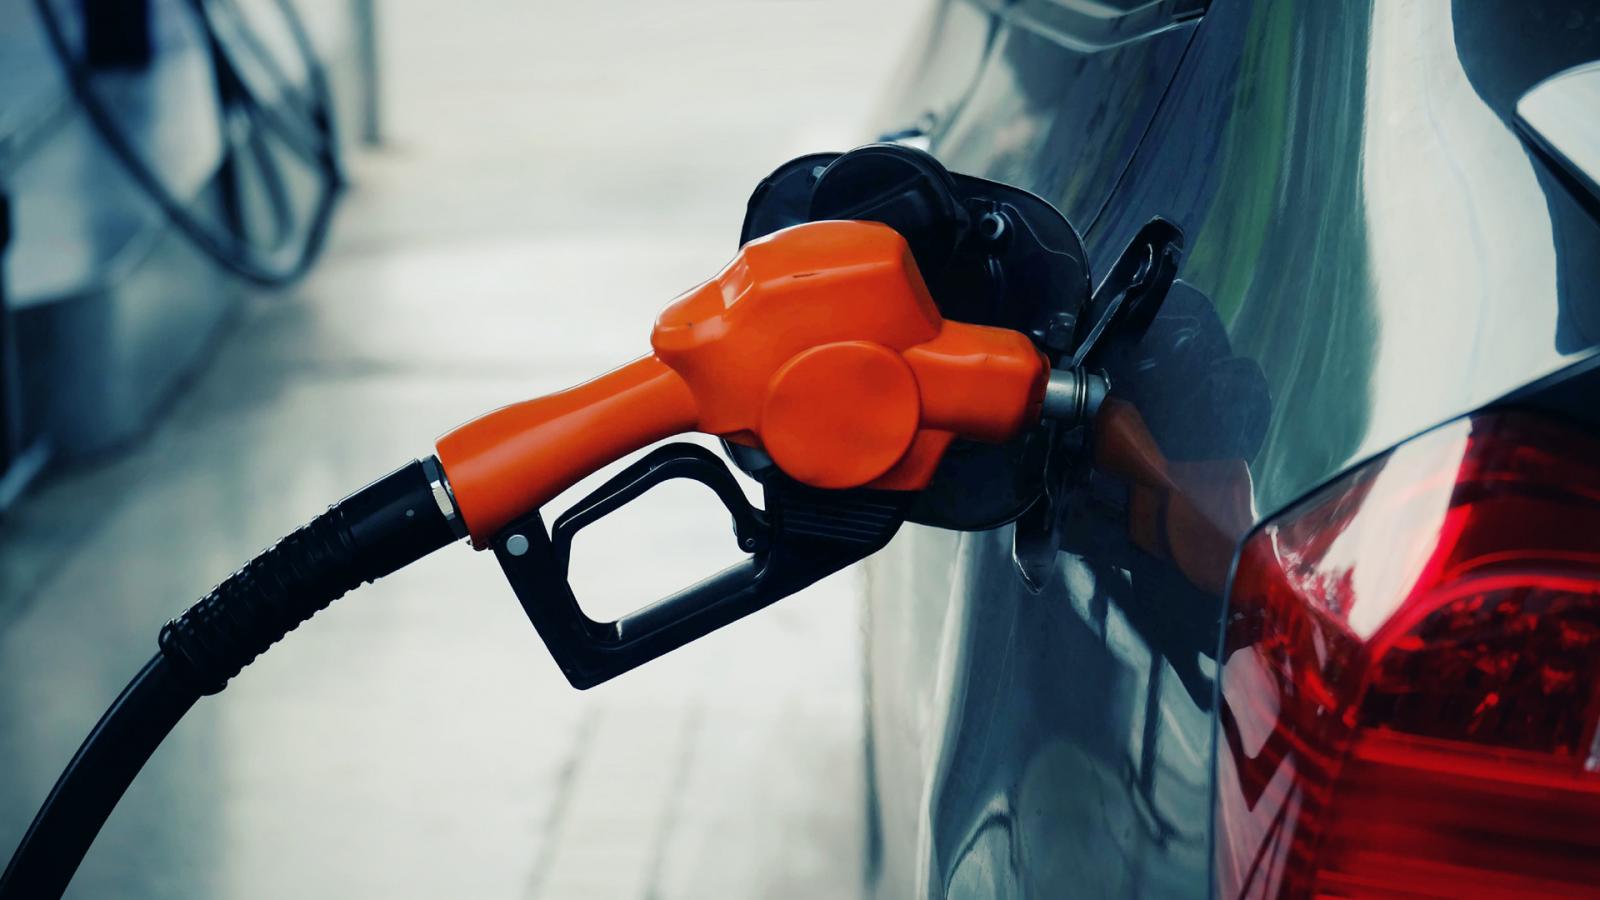 Βόλος: «Καμπάνα» σε υπάλληλο βενζινάδικου που χρέωνε διπλά τις κάρτες πελατών